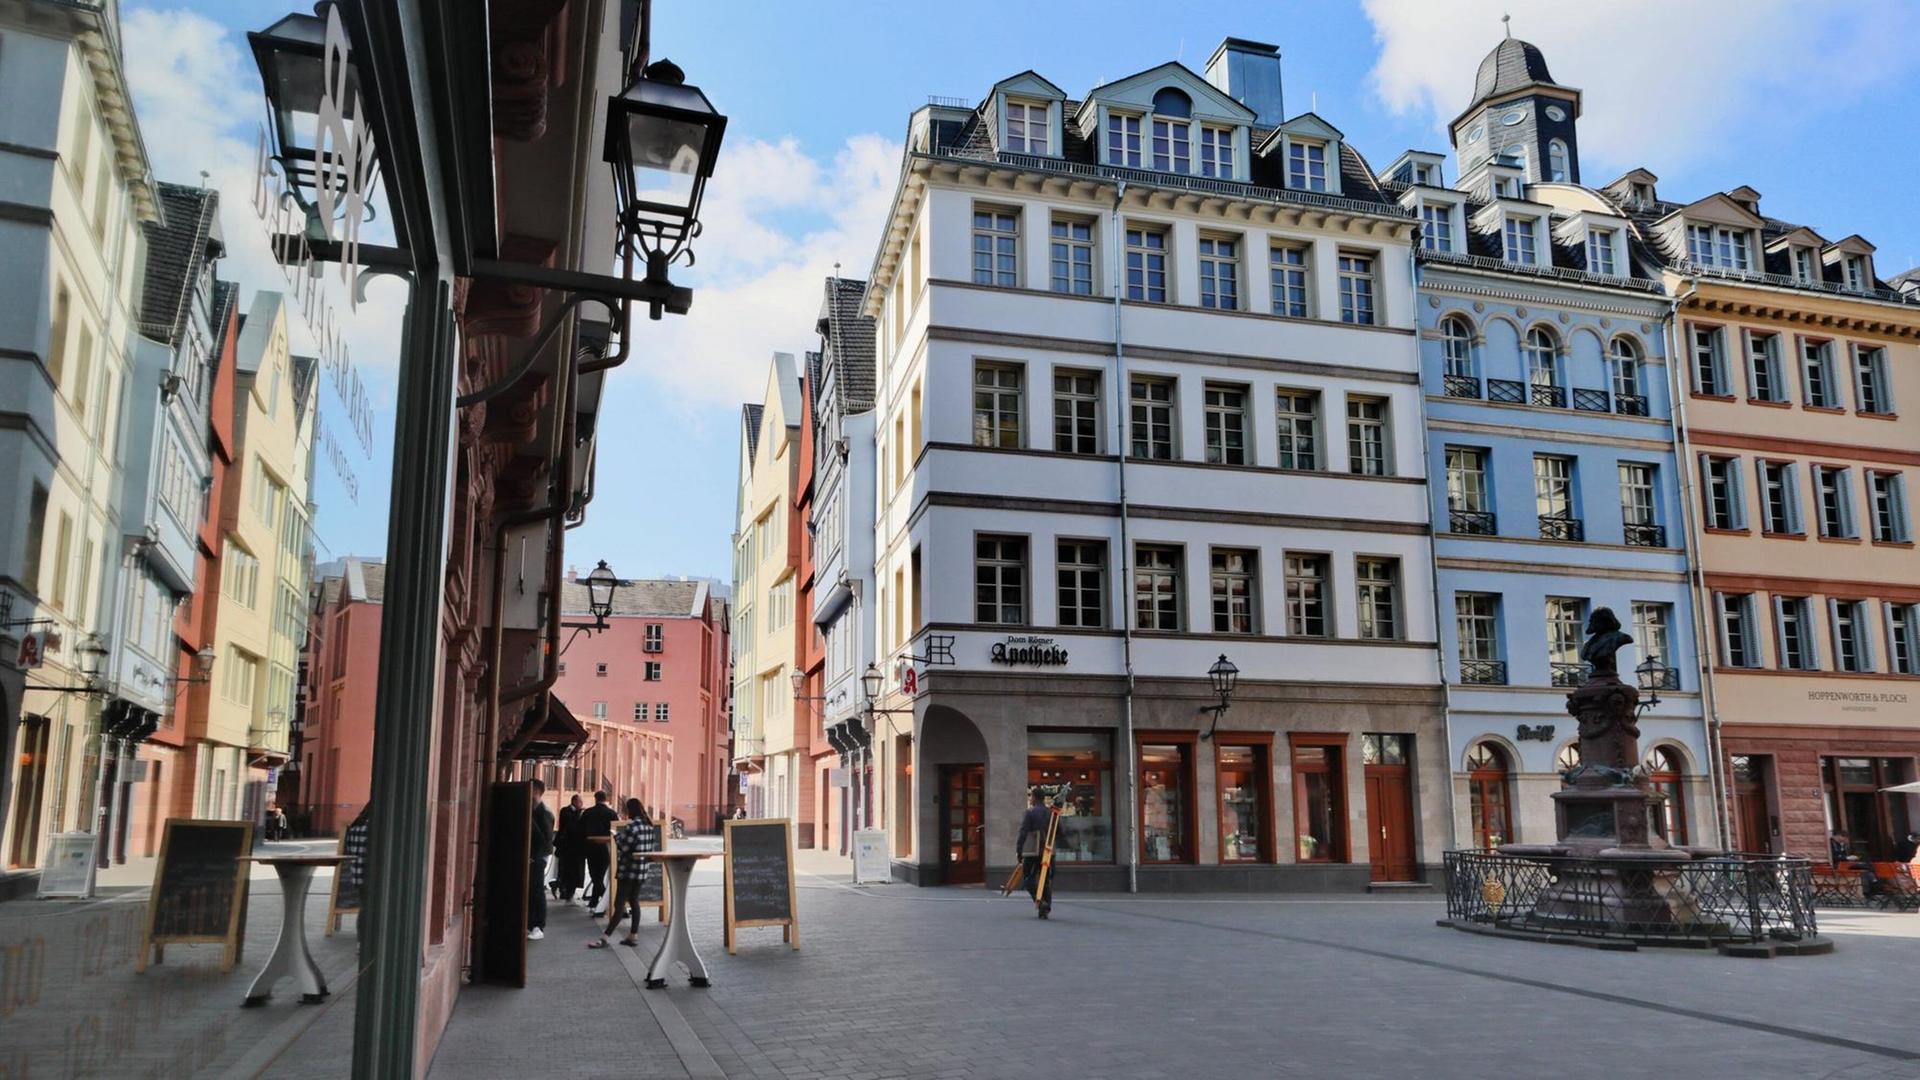 Ein Platz in der neuen Altstadt in Frankfurt am Main - aufgrund der Verbreitung des Coronavirus sind viele Restaurants und Geschäfte geschlossen.